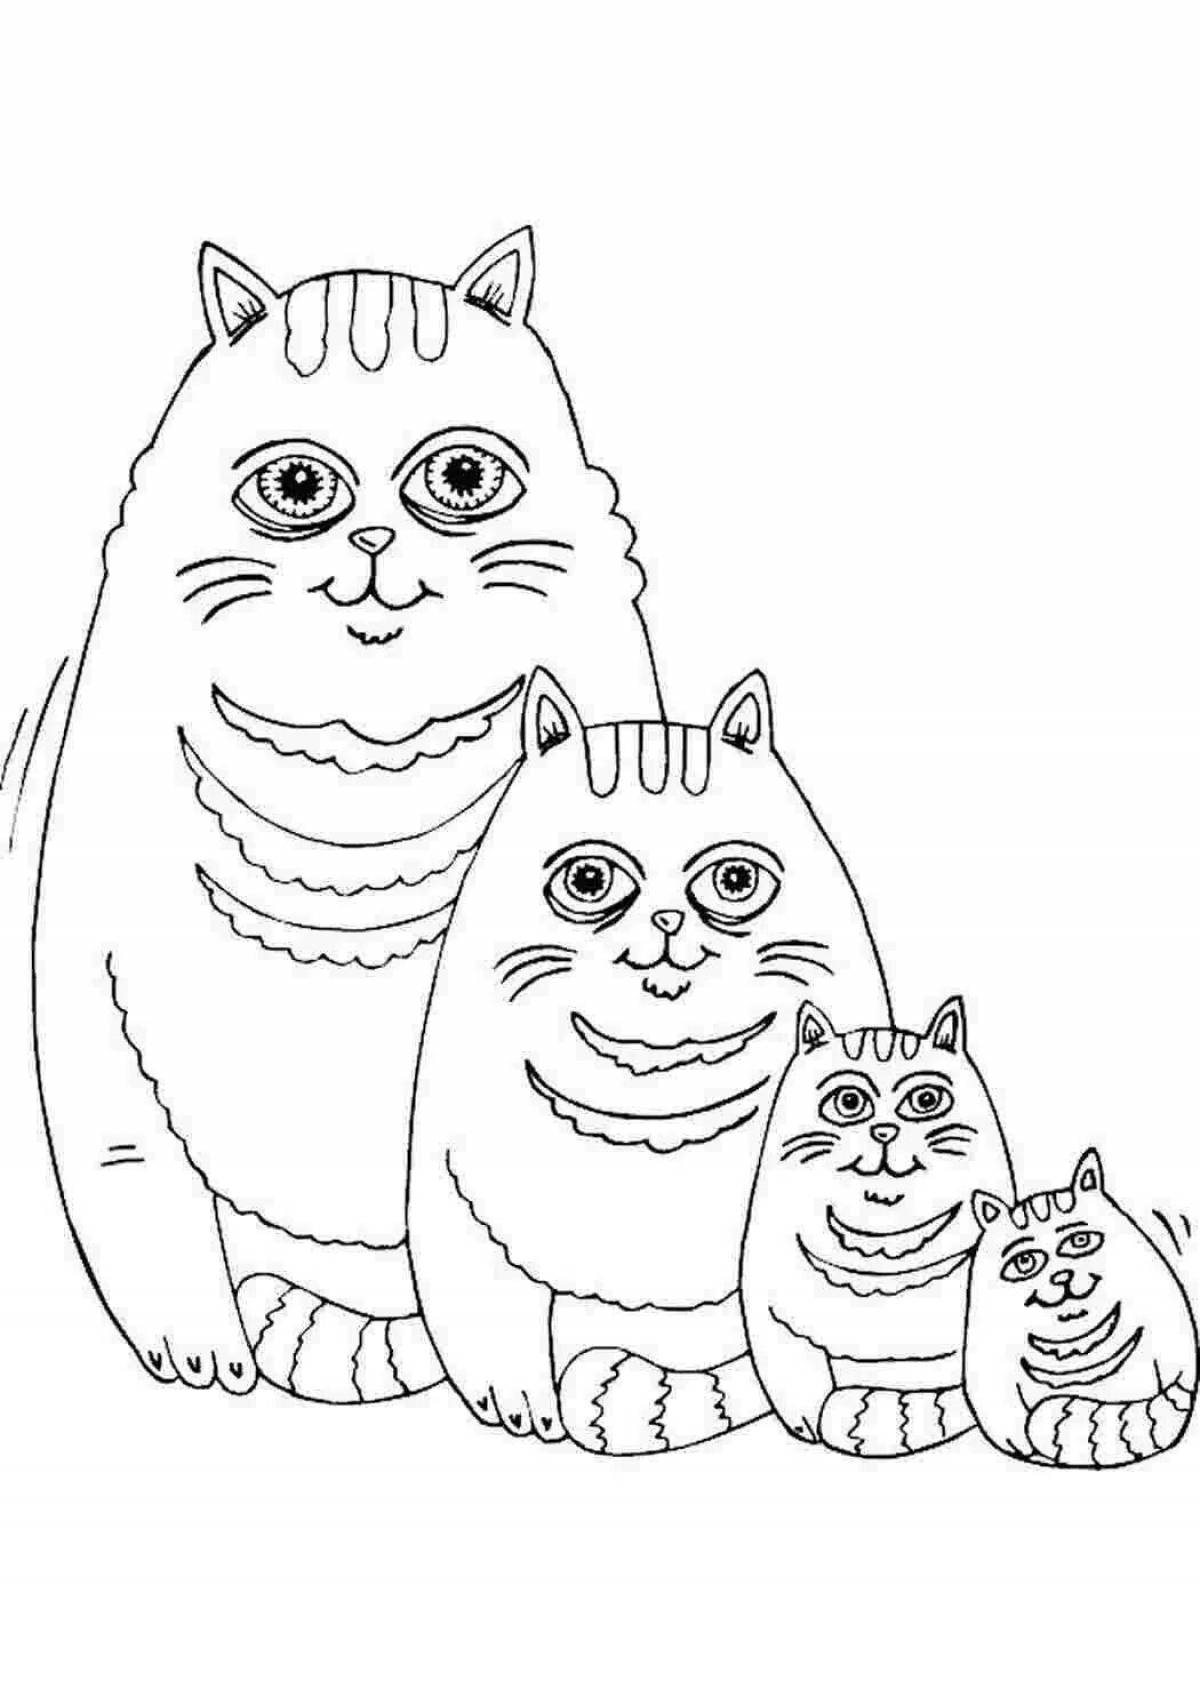 Раскрасы котов. Раскраска. Котики. Кошки. Раскраска. Раскраска коты. Кошка раскраска для детей.